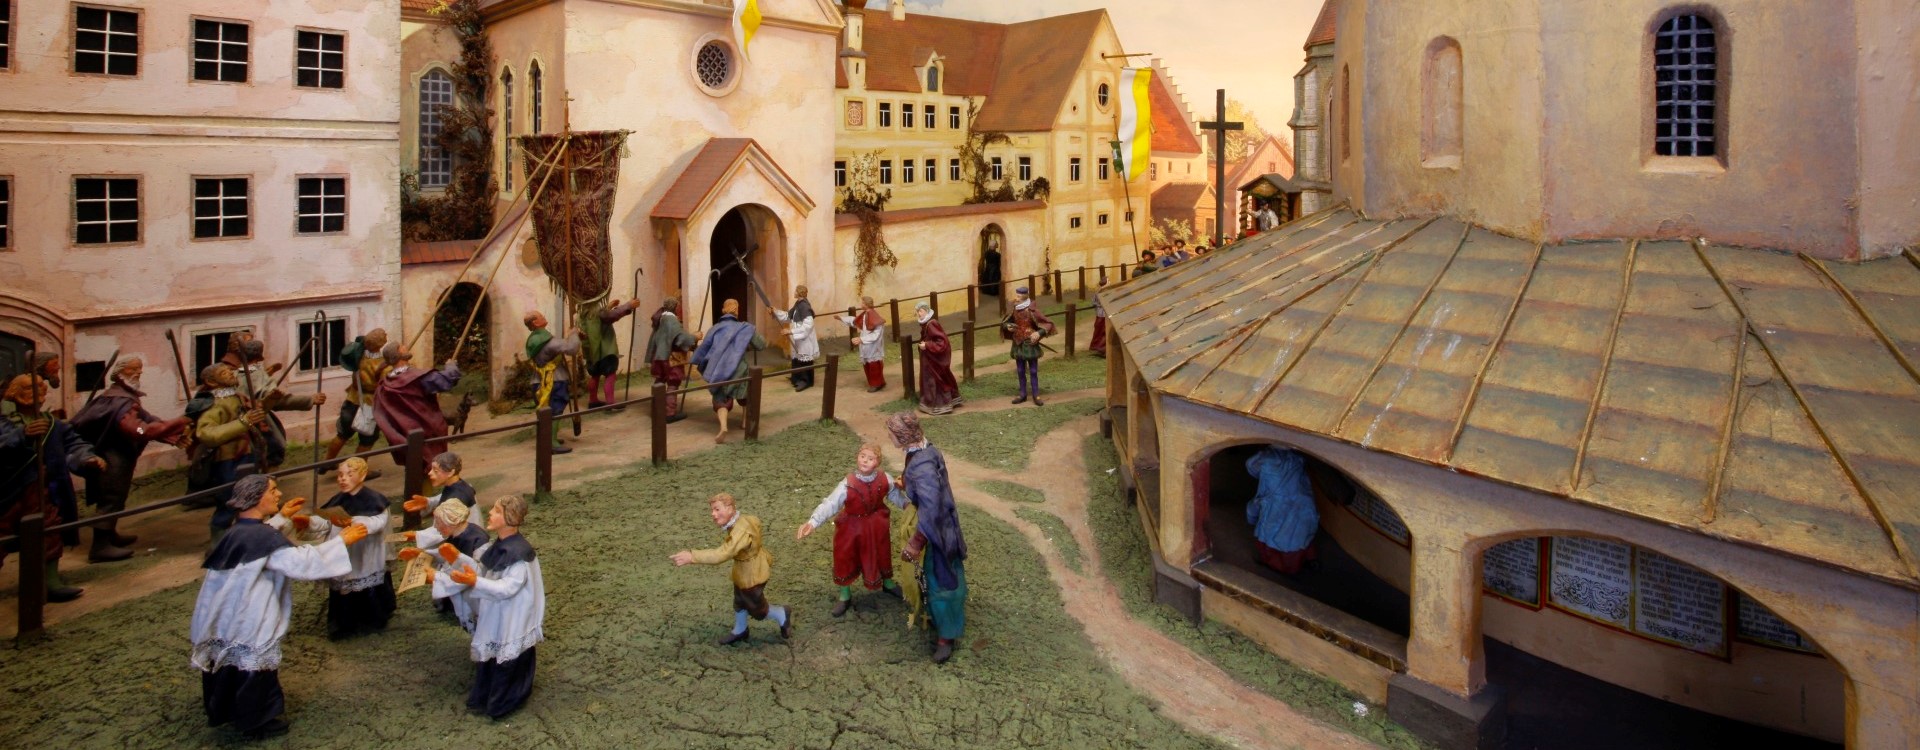 Ein Diorama der Dioramenschau Altötting, eine Pilgergruppe zieht in die Kirche ein.